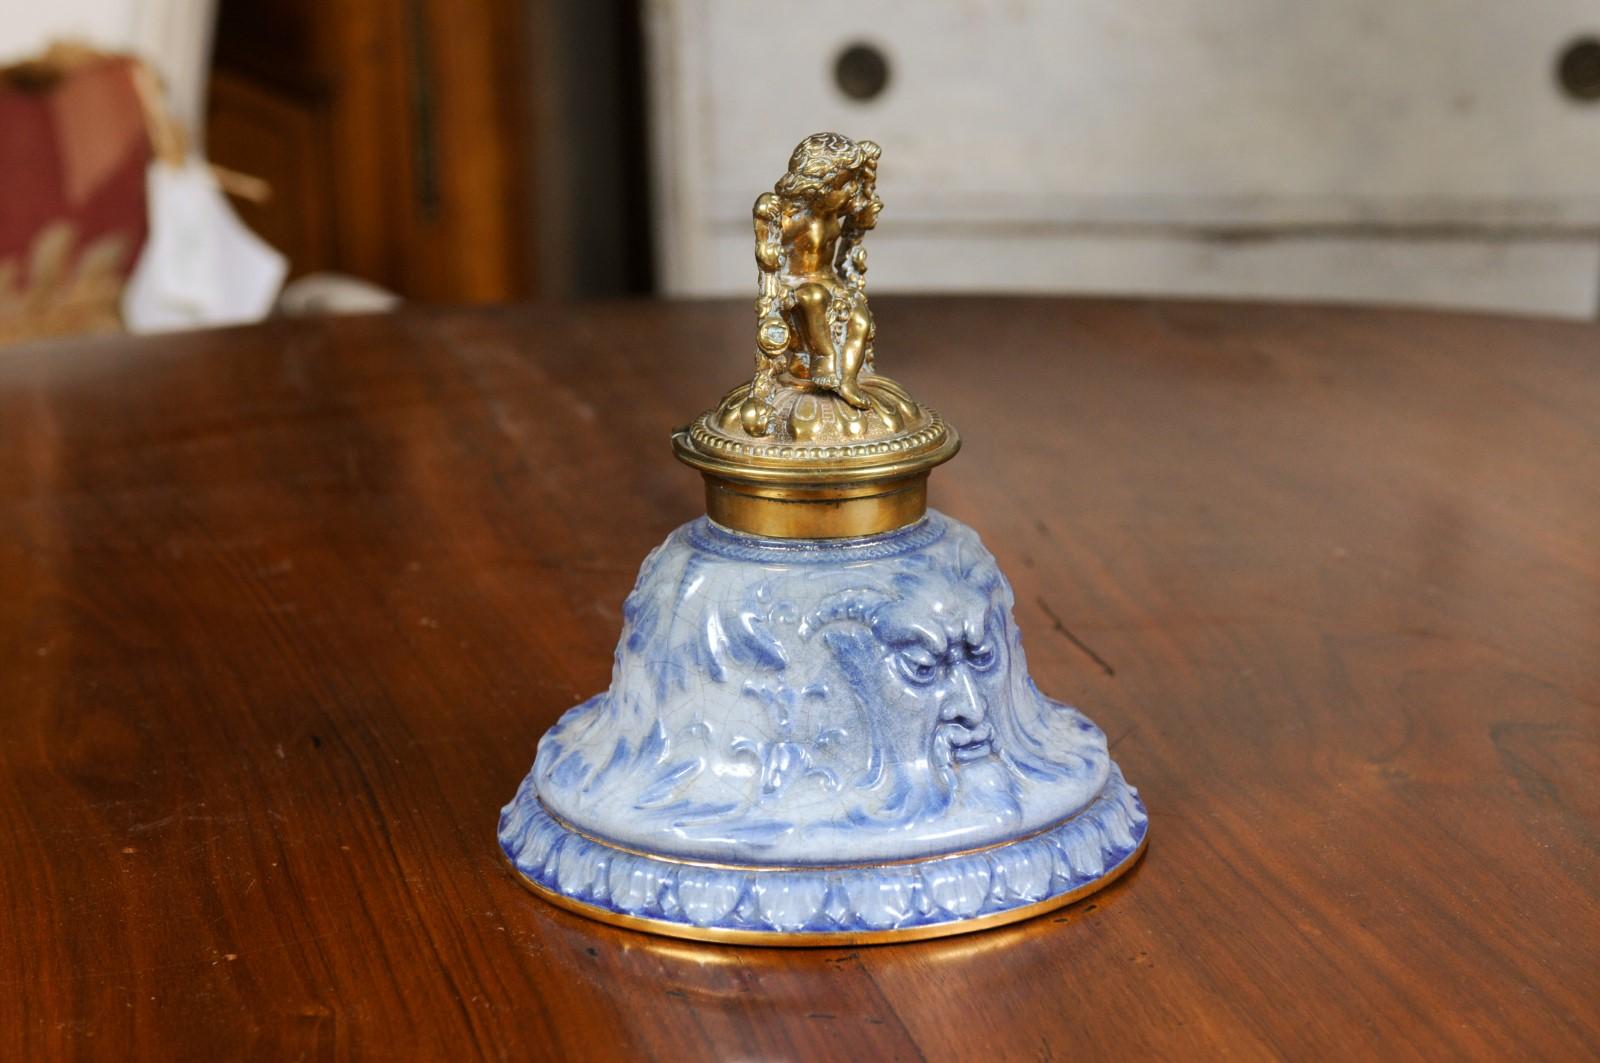 Encrier d'époque victorienne en porcelaine et laiton du XIXe siècle, à motif de putto. Créé en Angleterre à l'époque victorienne, cet encrier présente une base en porcelaine bleue ornée de satyres et de motifs feuillus, surmontée d'un beau putto en